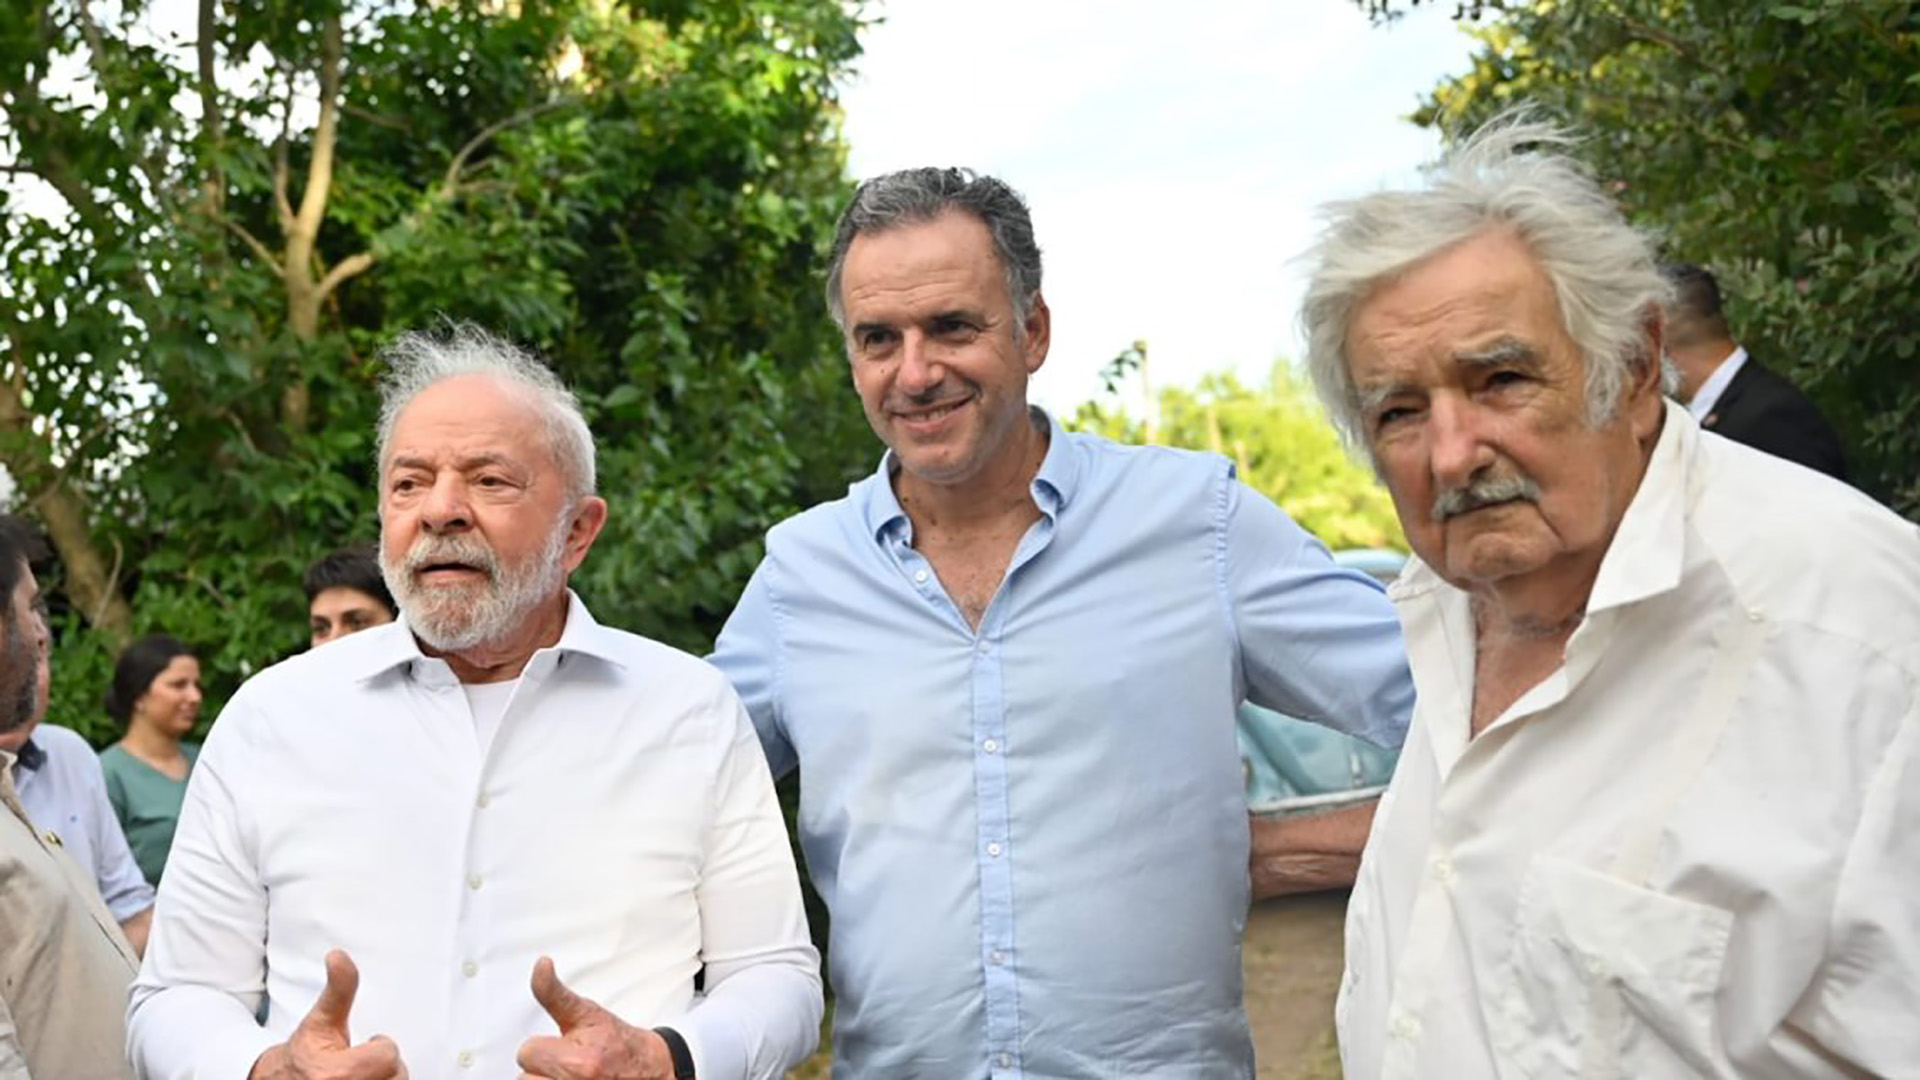 A la chacra ubicada en Rincón del Cerro concurrió el intendente de Canelones, Yamandú Orsi, posible candidato a la presidencia uruguaya por el Frente Amplio, con gran apoyo de Mujica.